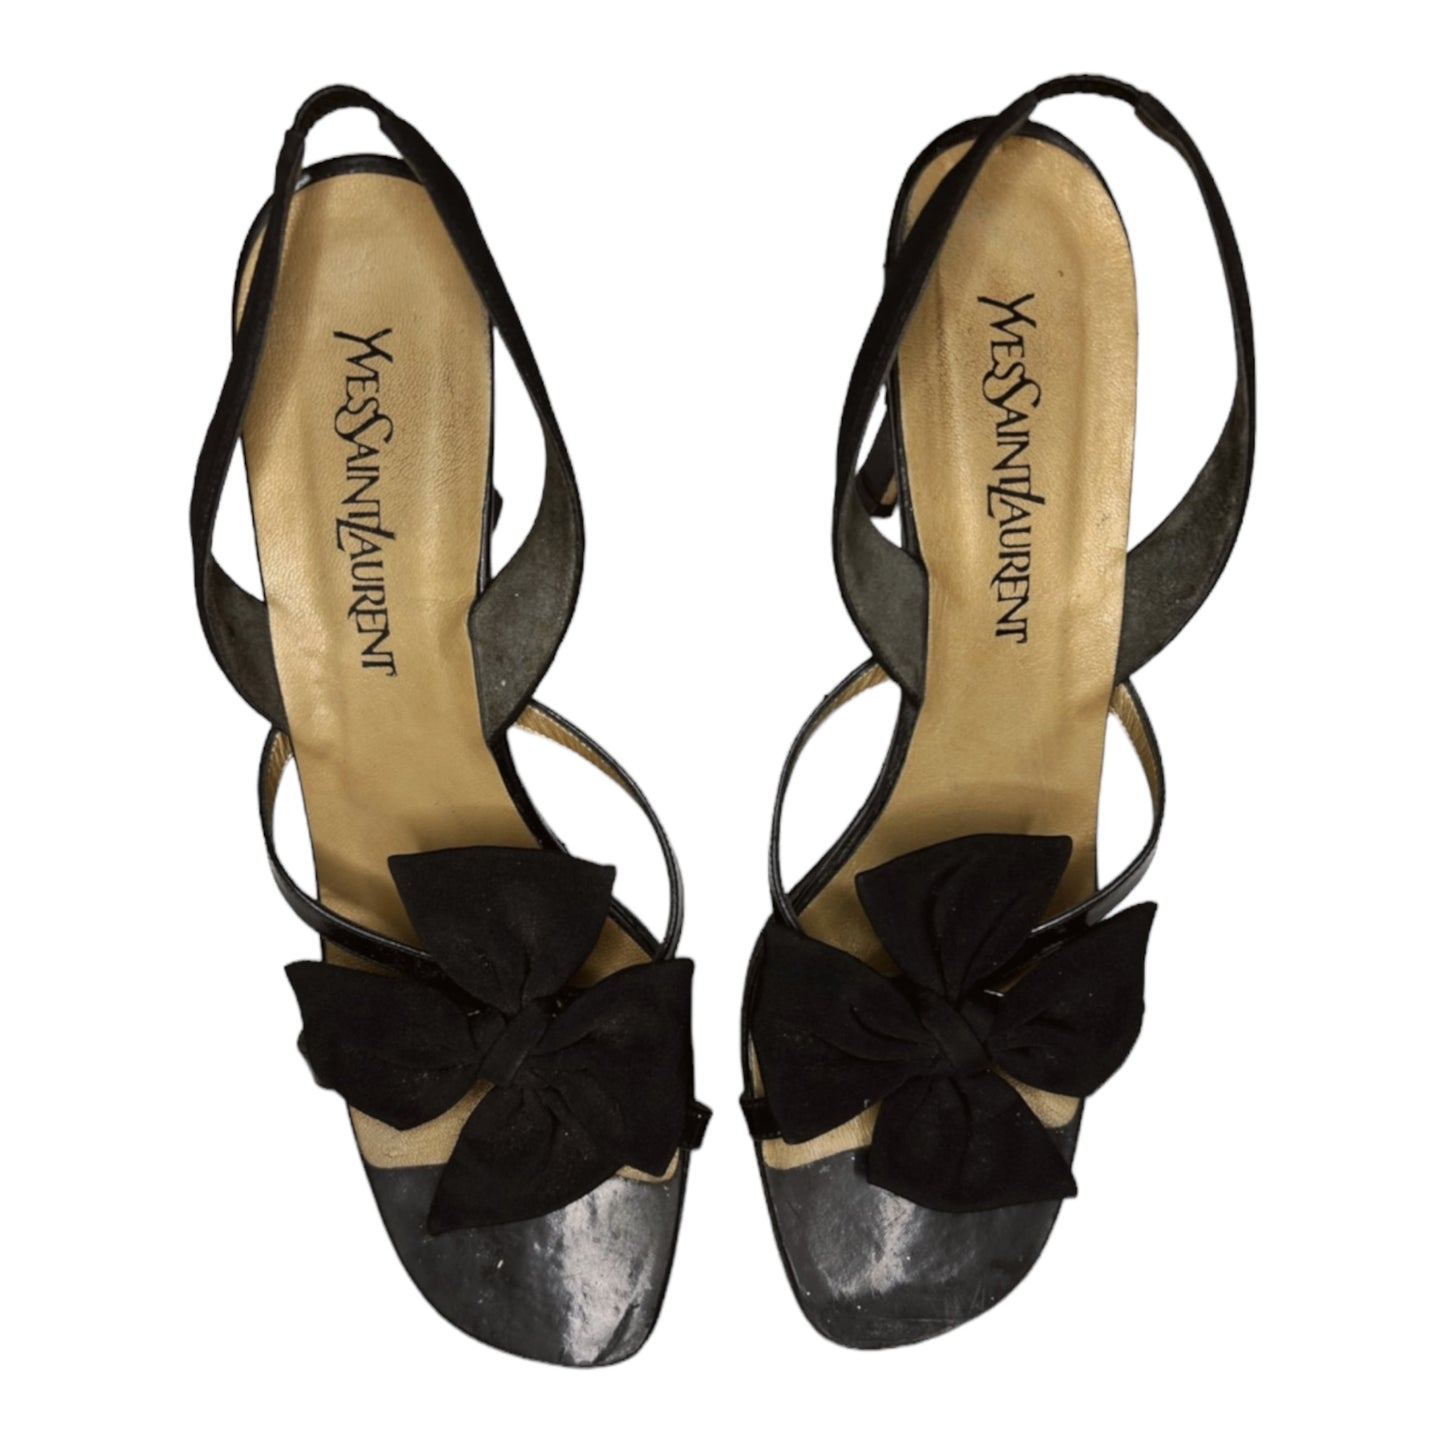 Vintage Yves Saint Laurent floral sandals